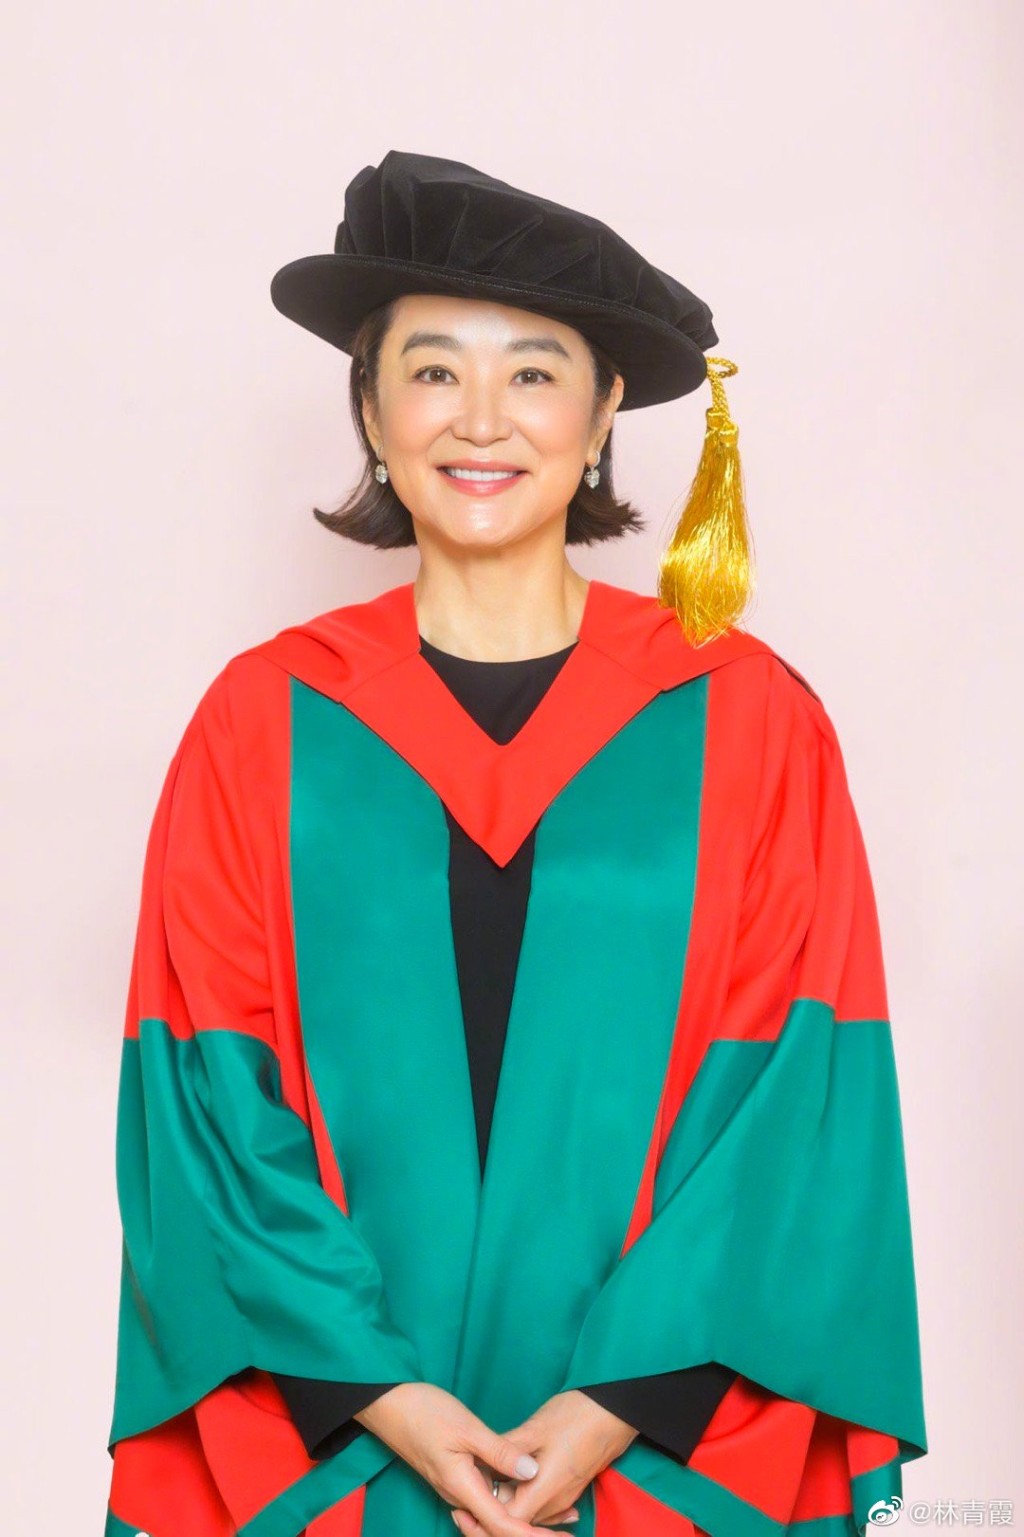 林青霞去年底更获香港大学颁授「名誉社会科学博士学位」。